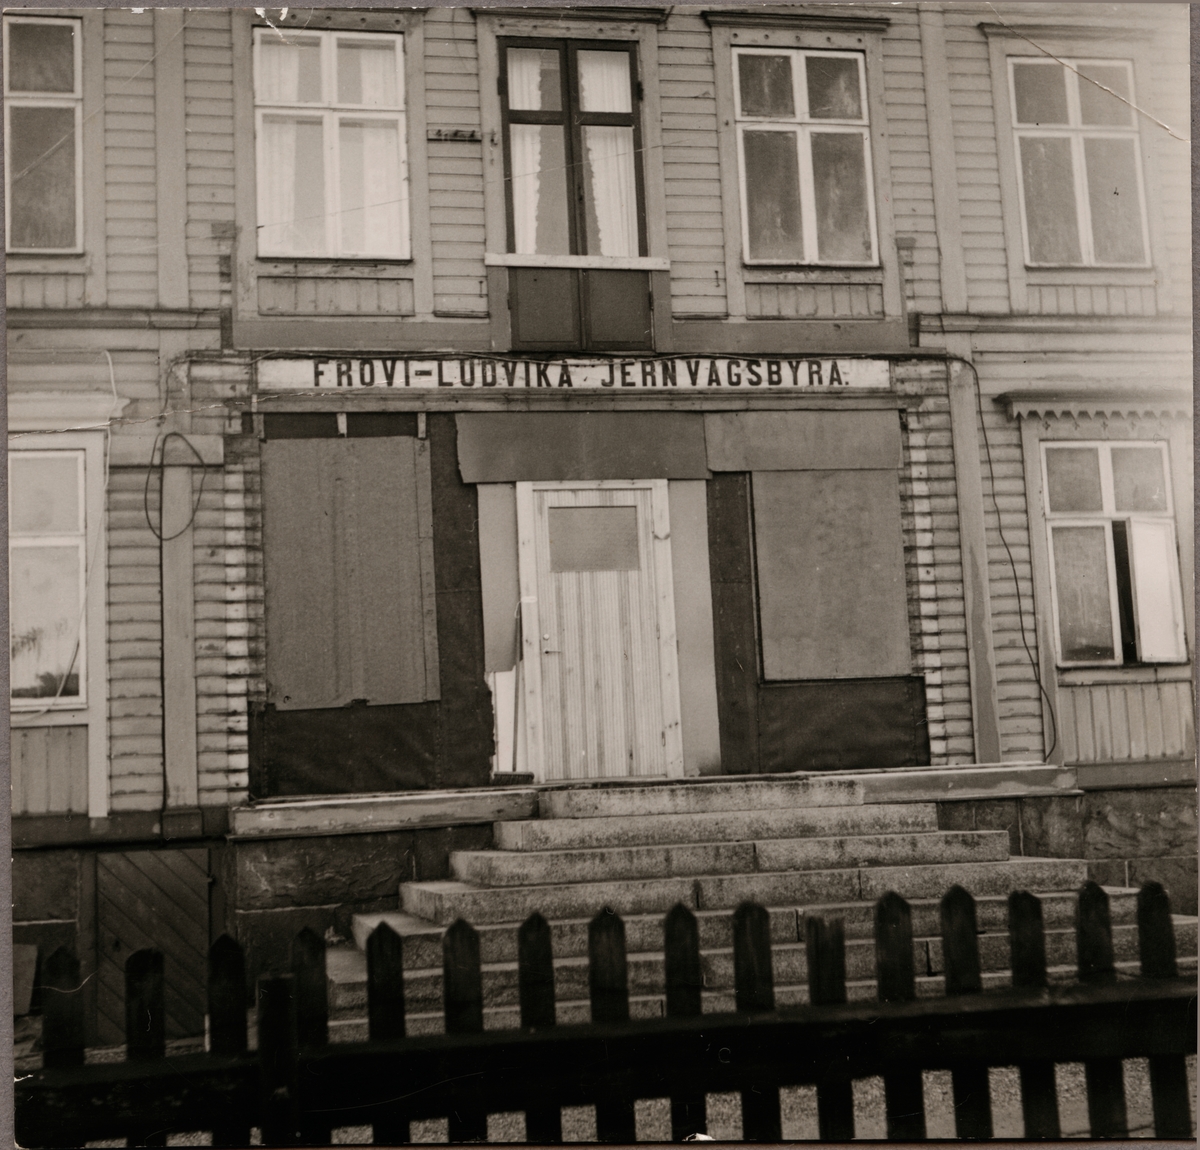 Ombyggnad av Frövi - Ludvika Jernvägsbyrå, FLJ's förvaltningsbyggnad i Kopparberg, 1928.